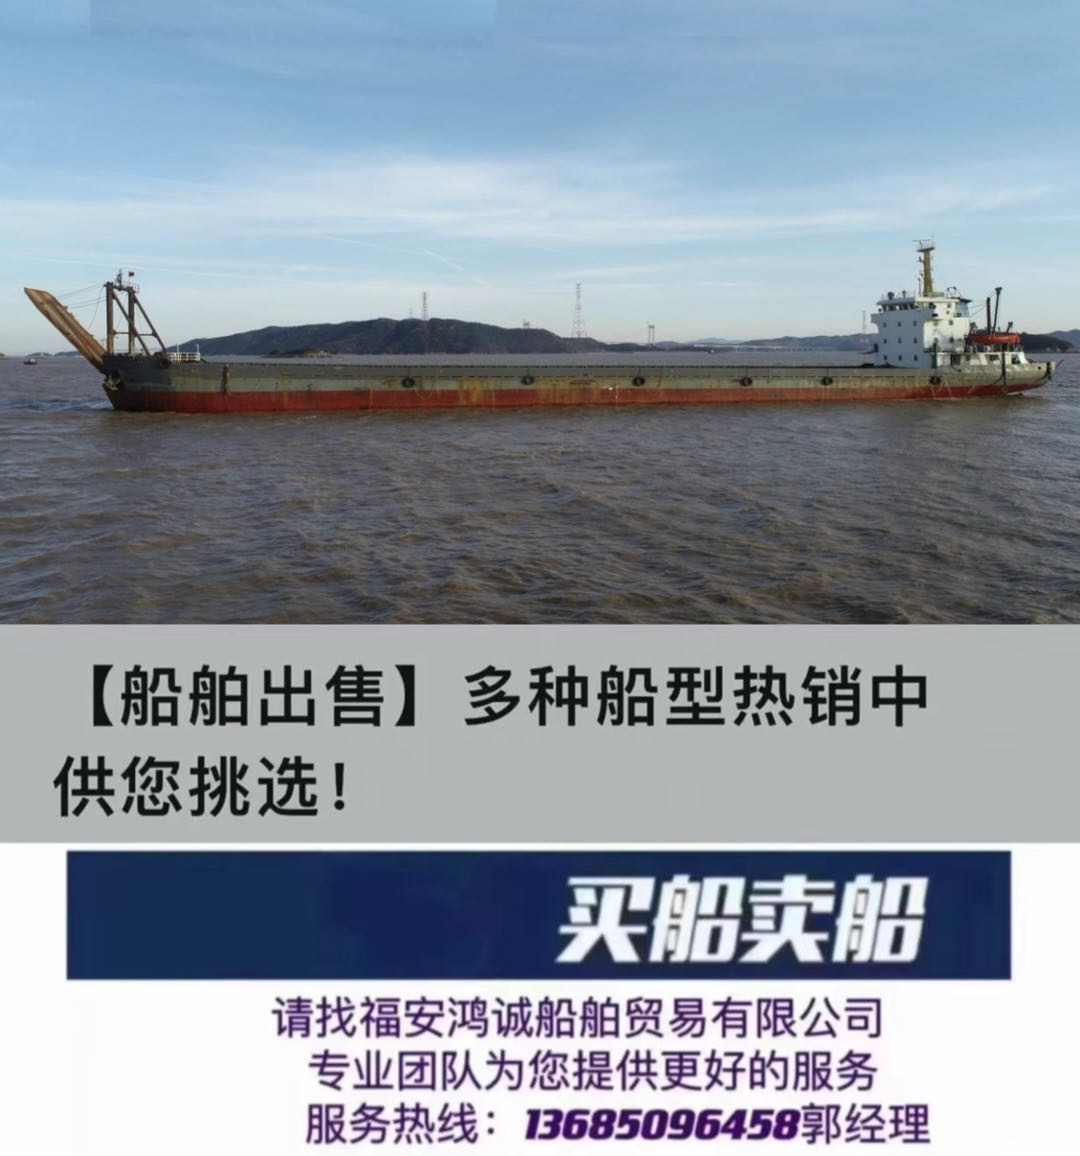 低价出售实载3000吨甲板货船 前跳板/后驾驶室/ 2008年12月建造/ 船级社CCS